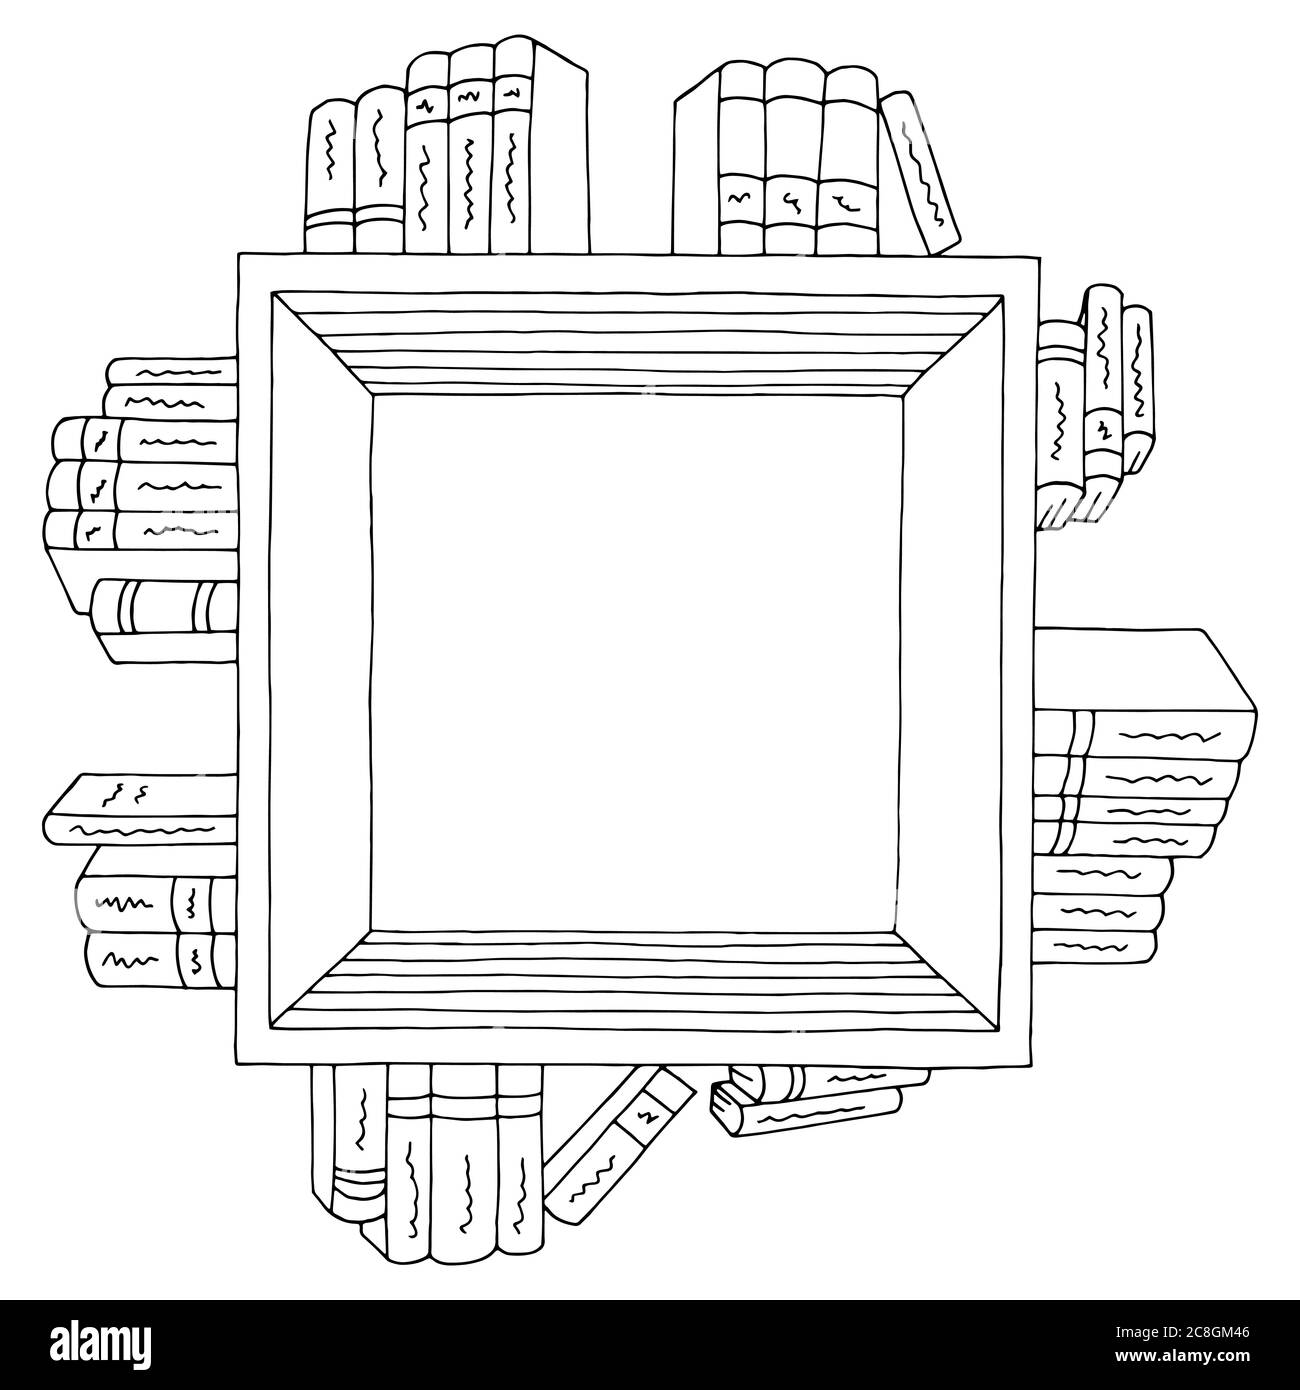 Buch Regal quadratische Grafik schwarz weiß isoliert Skizze Illustration Vektor Stock Vektor